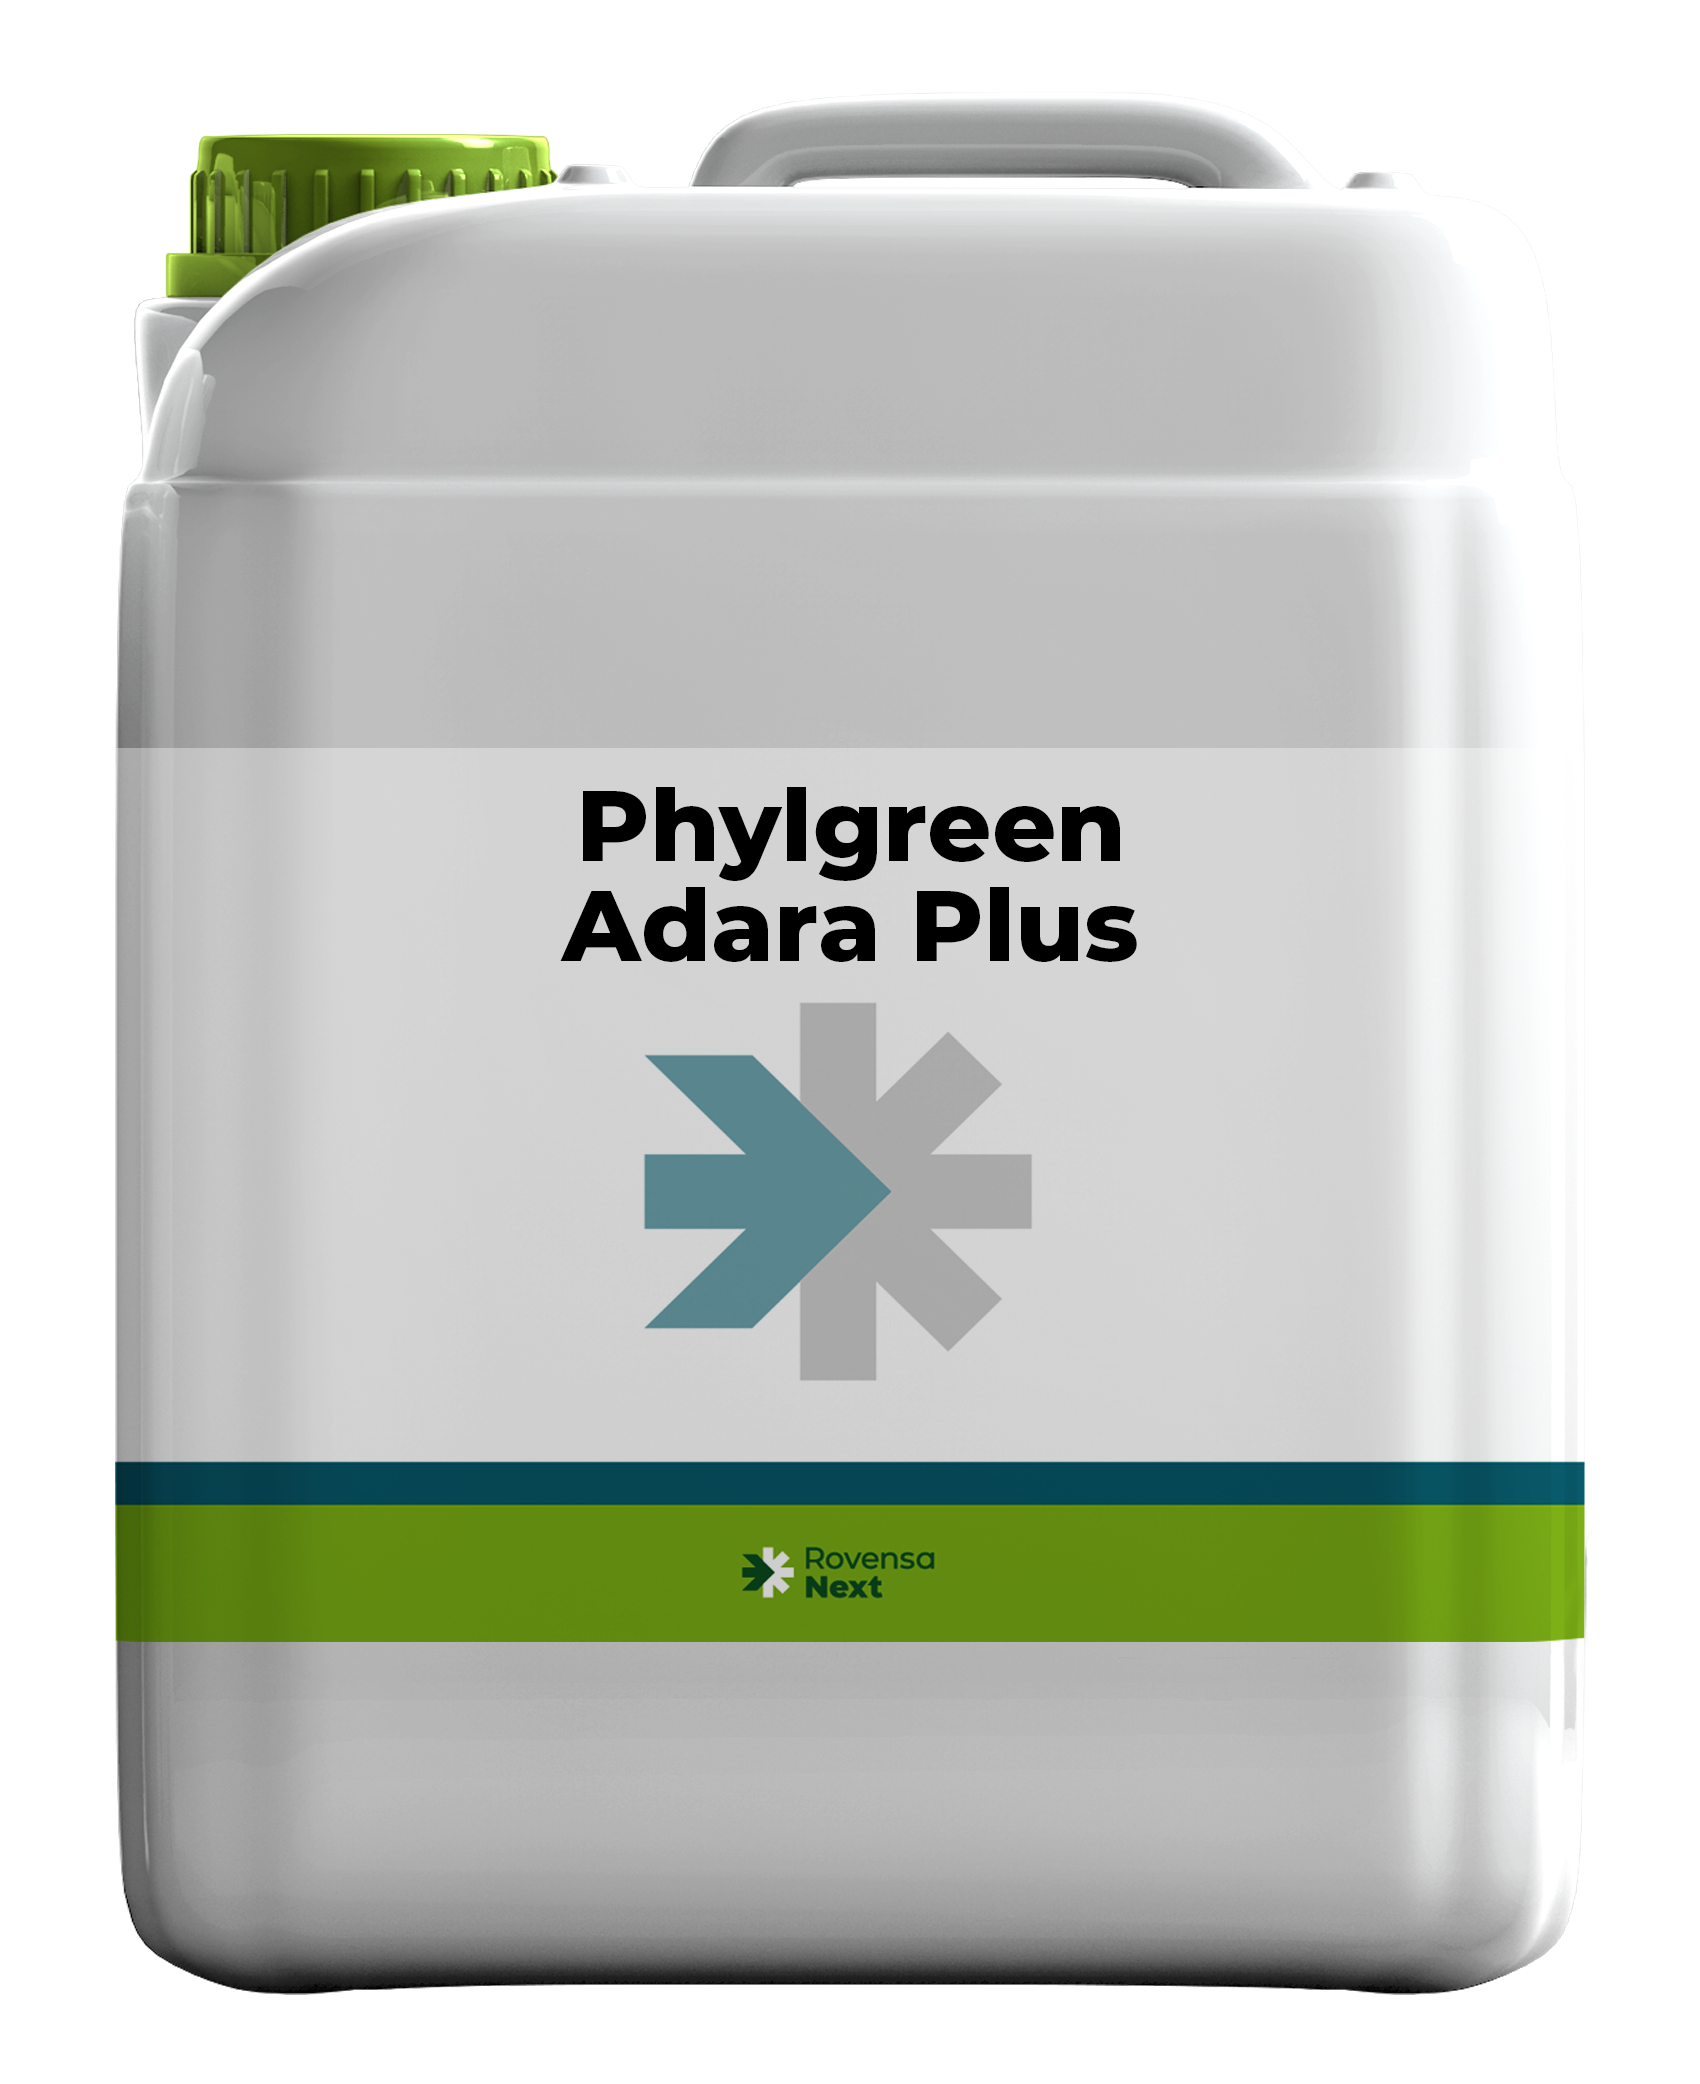 Phylgreen Adara Plus